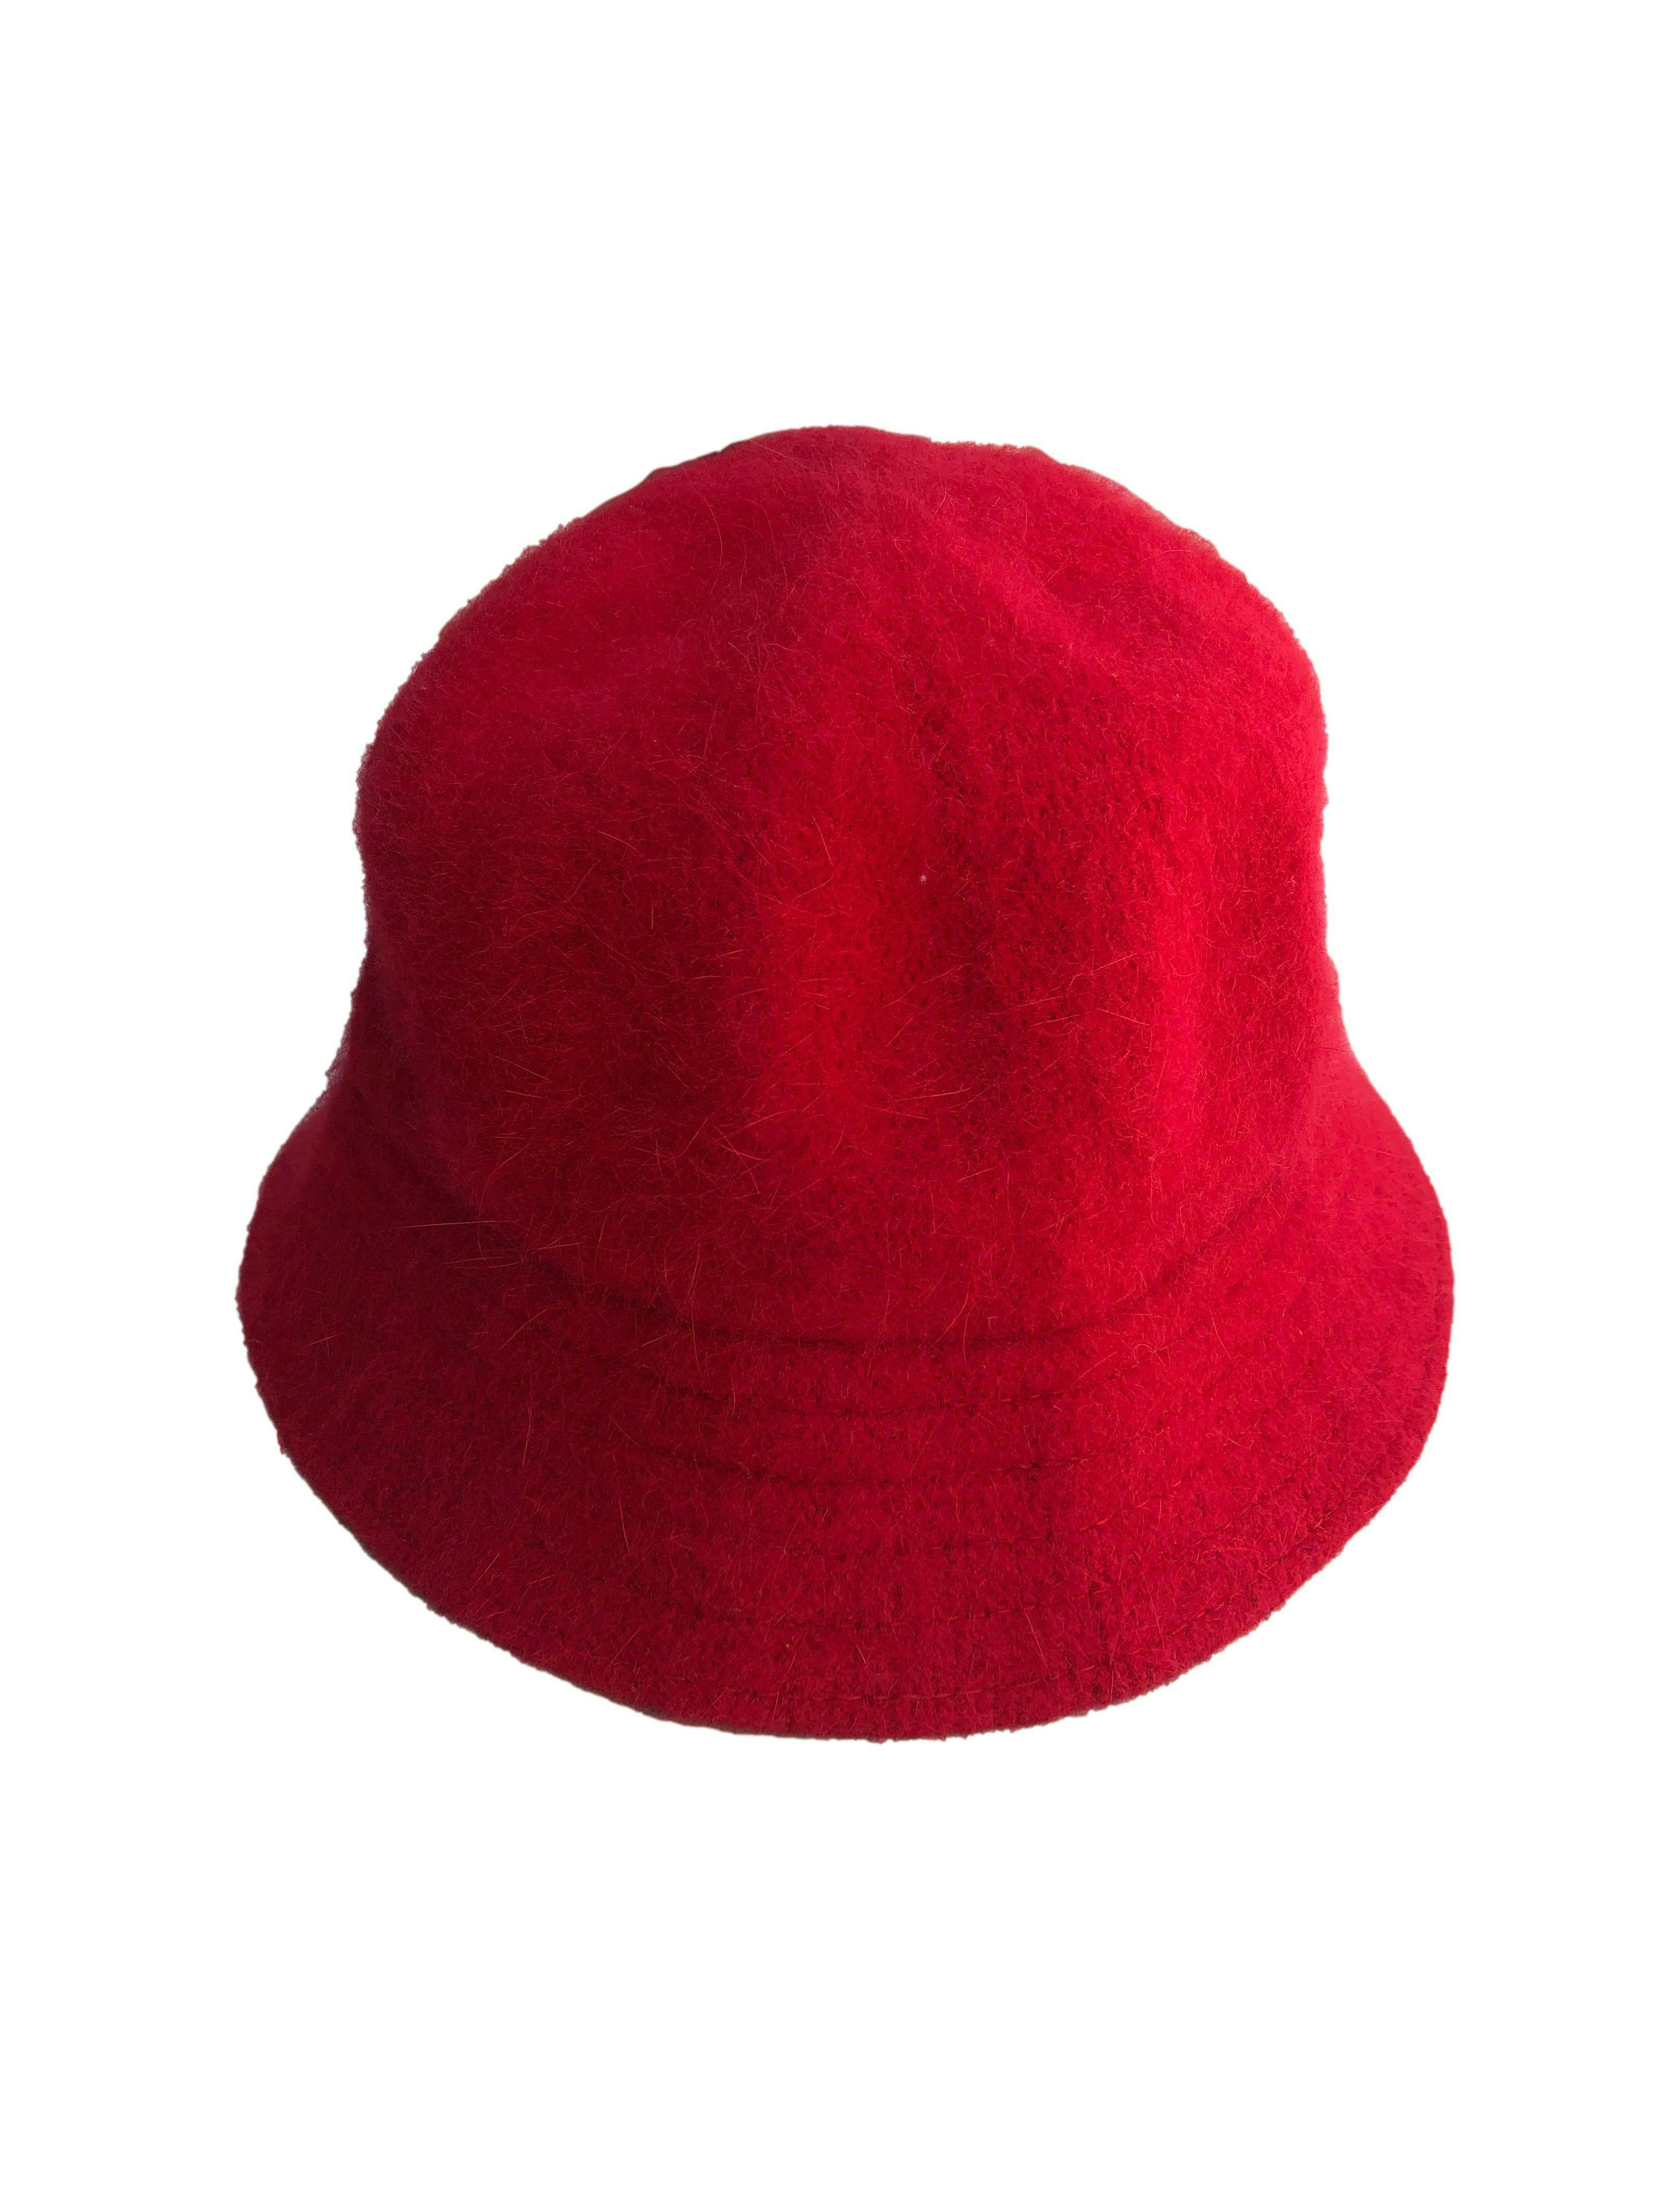 Sombrero rojo de paño con efecto pelo 80% angora. Contorno 64cm, Ala 5cm.